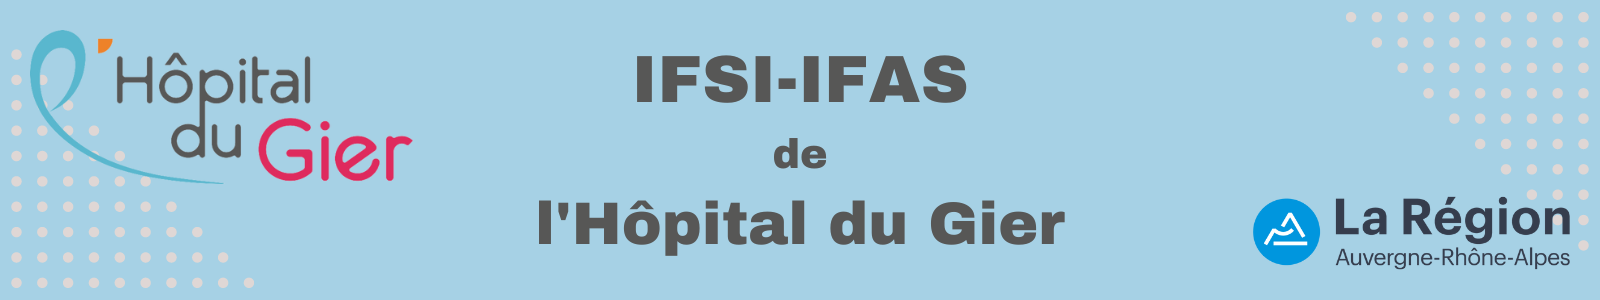 IFSI-IFAS de l'Hôpital du Gier.png